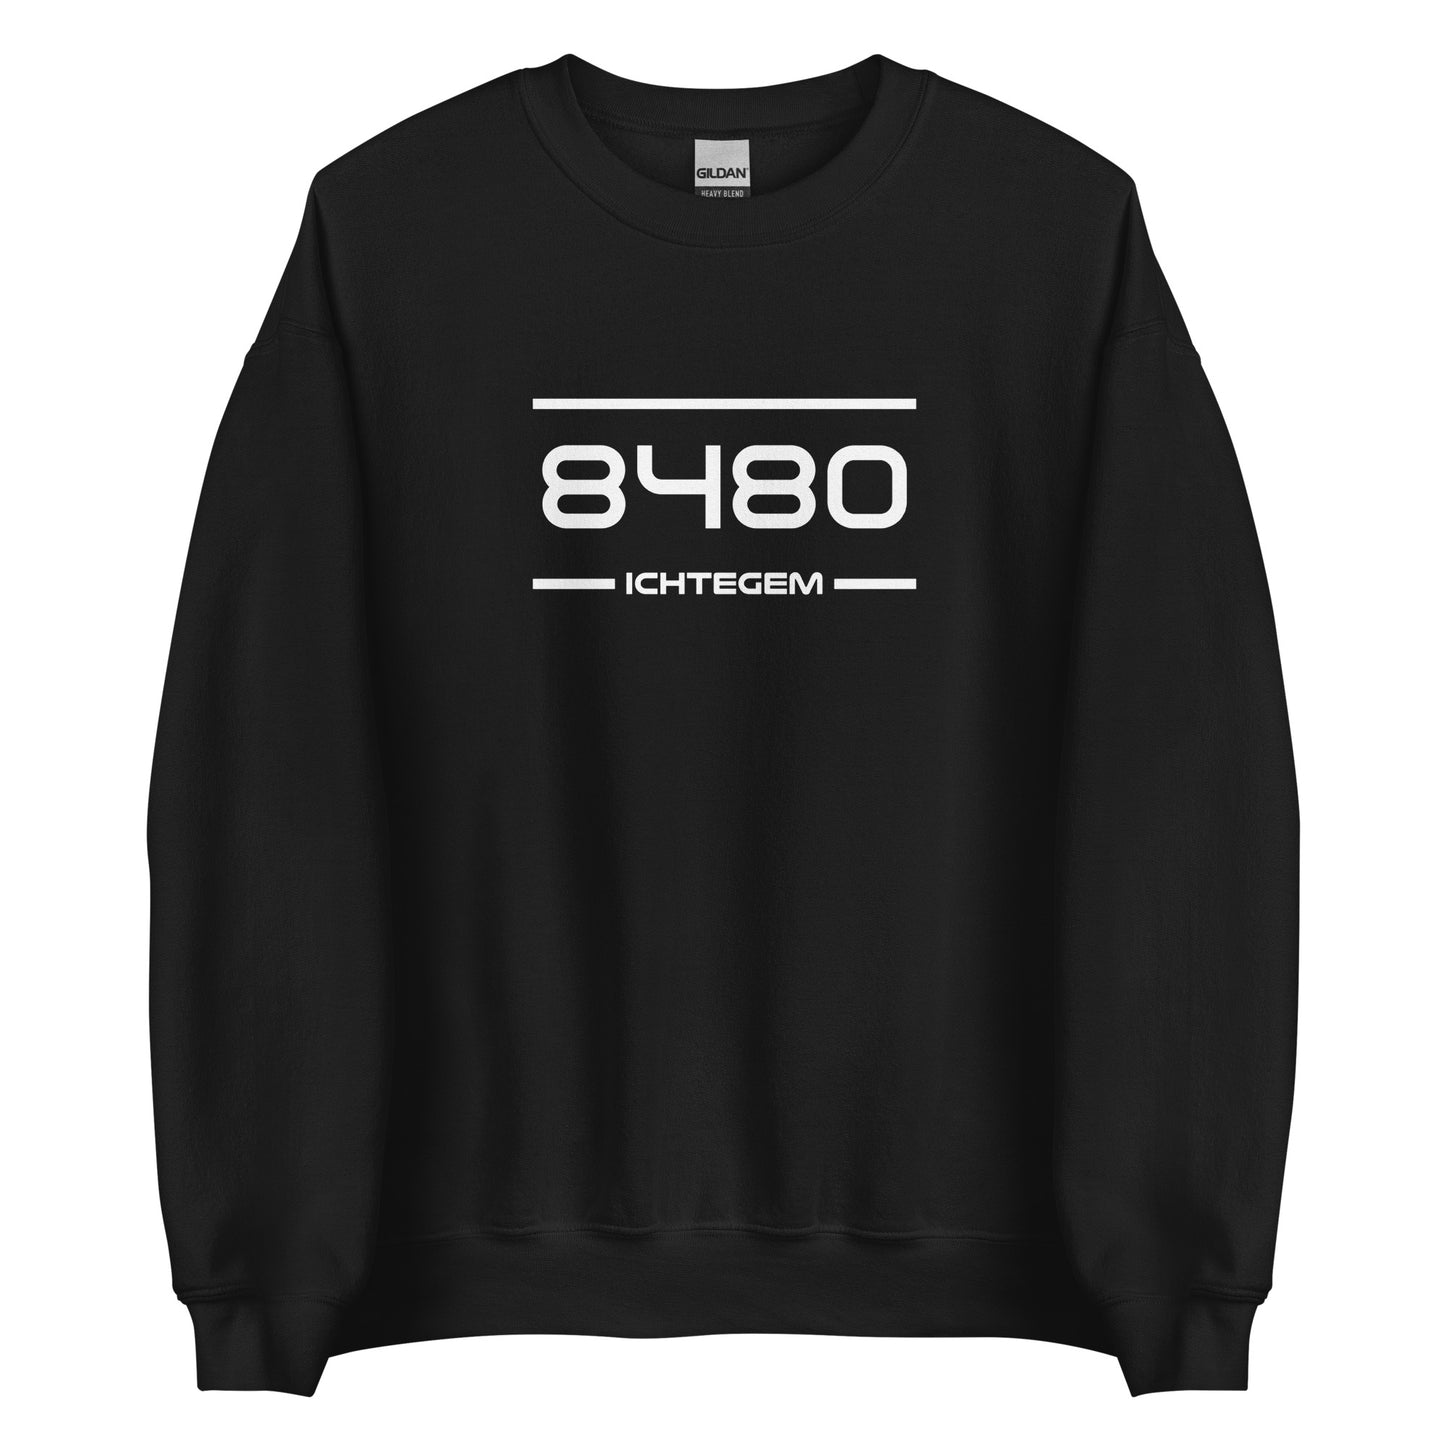 Sweater - 8480 - Ichtegem (M/V)